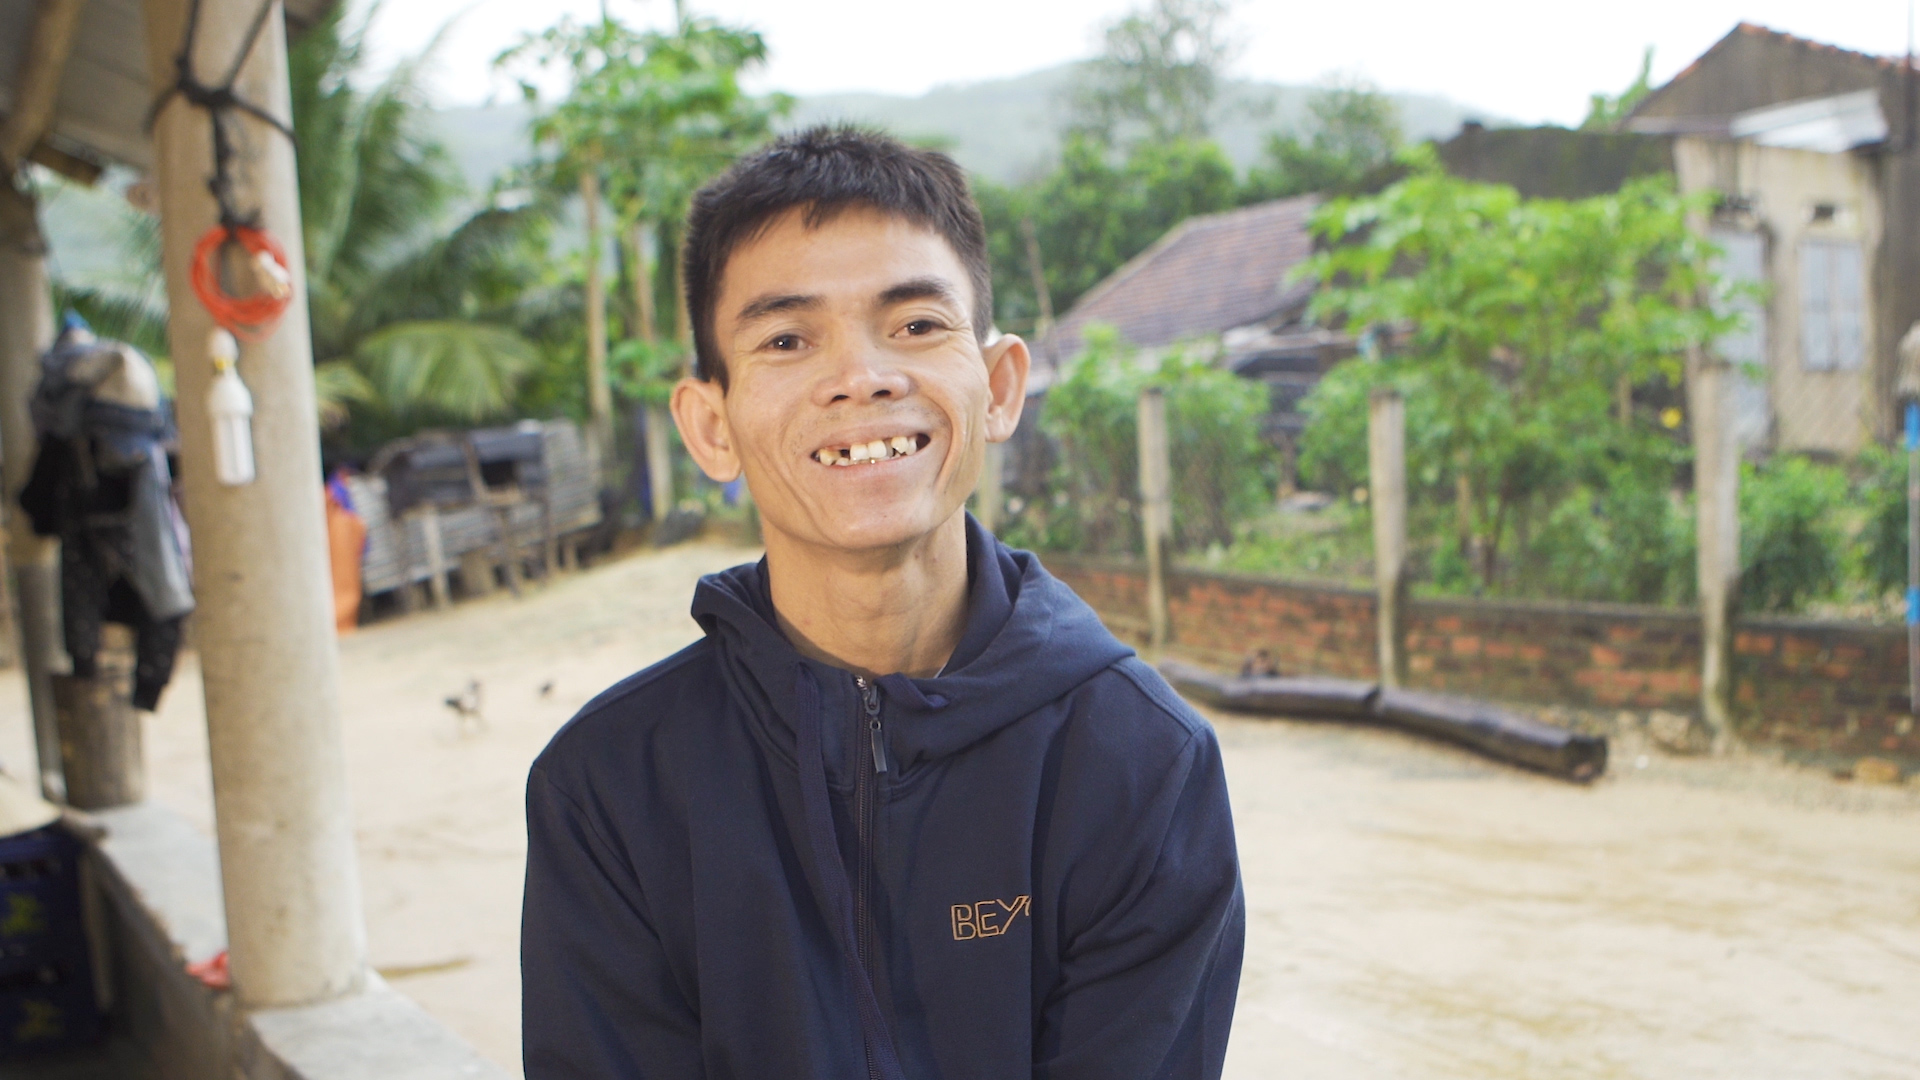 Anh chăn bò Sô Y Tiết xây nhà mới đổi đời sau 3 năm “gây bão” CĐM Việt Nam và thế giới